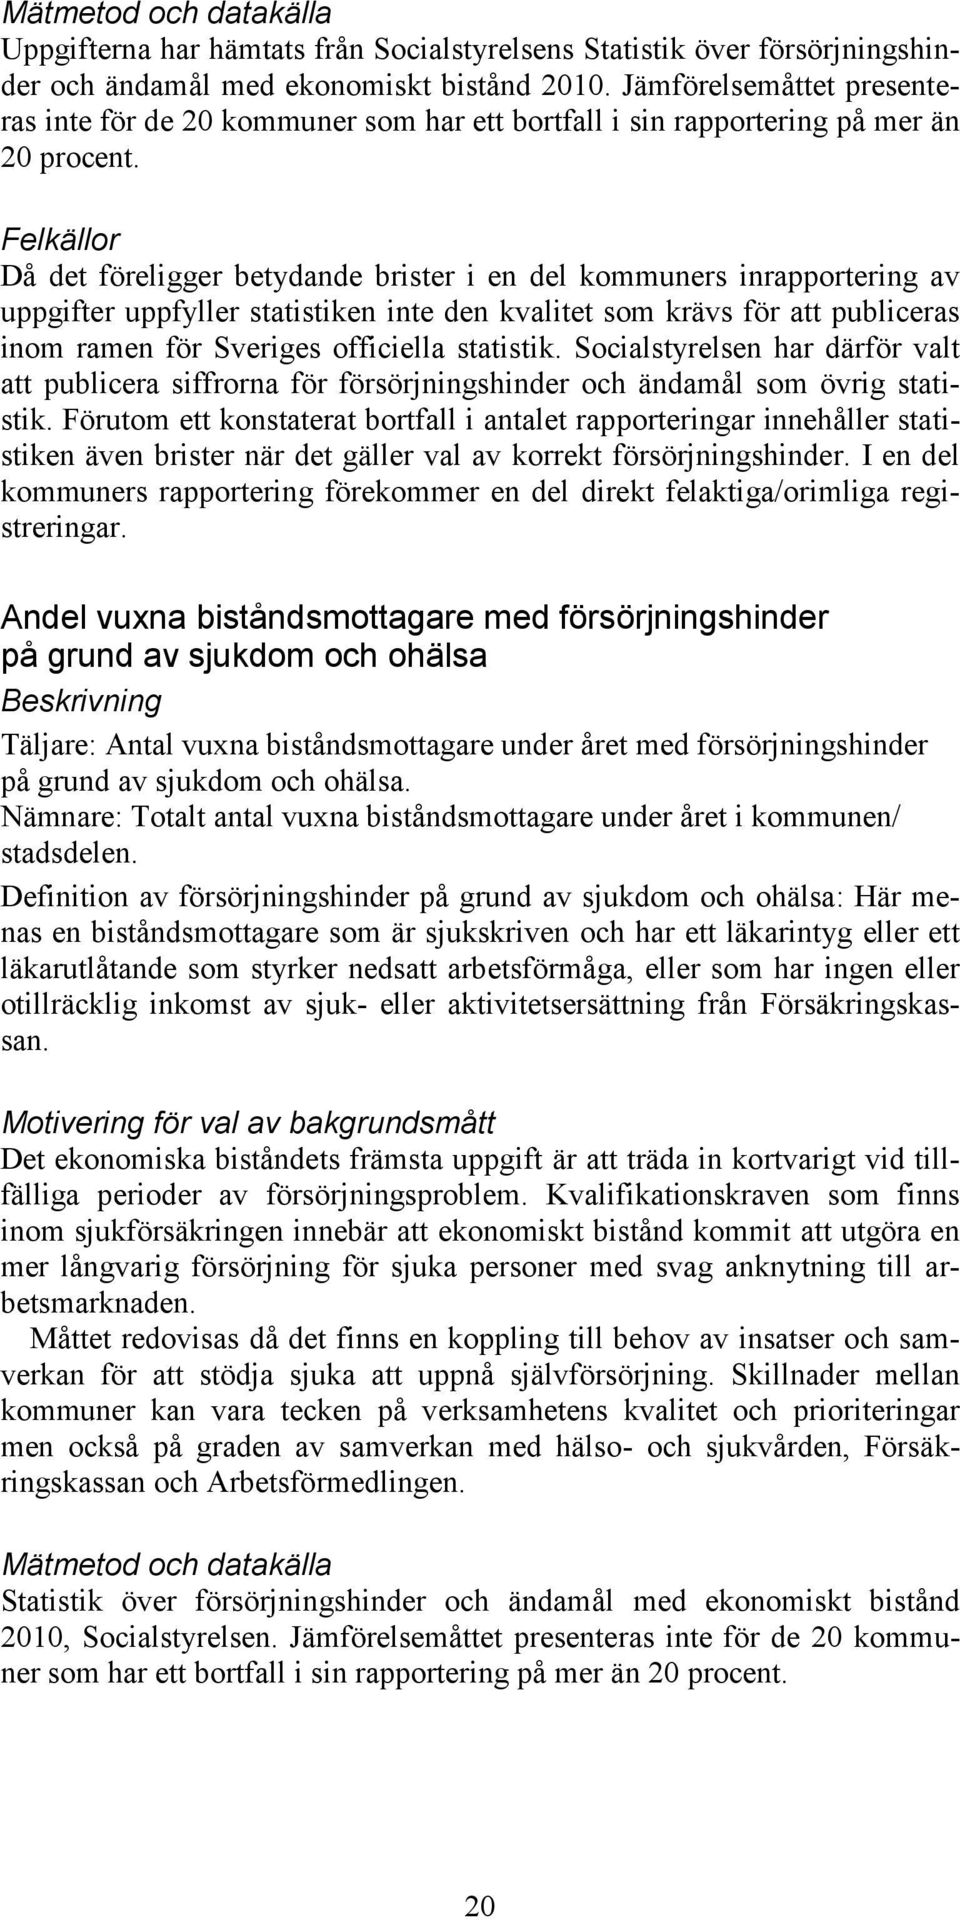 Felkällor Då det föreligger betydande brister i en del kommuners inrapportering av uppgifter uppfyller statistiken inte den kvalitet som krävs för att publiceras inom ramen för Sveriges officiella